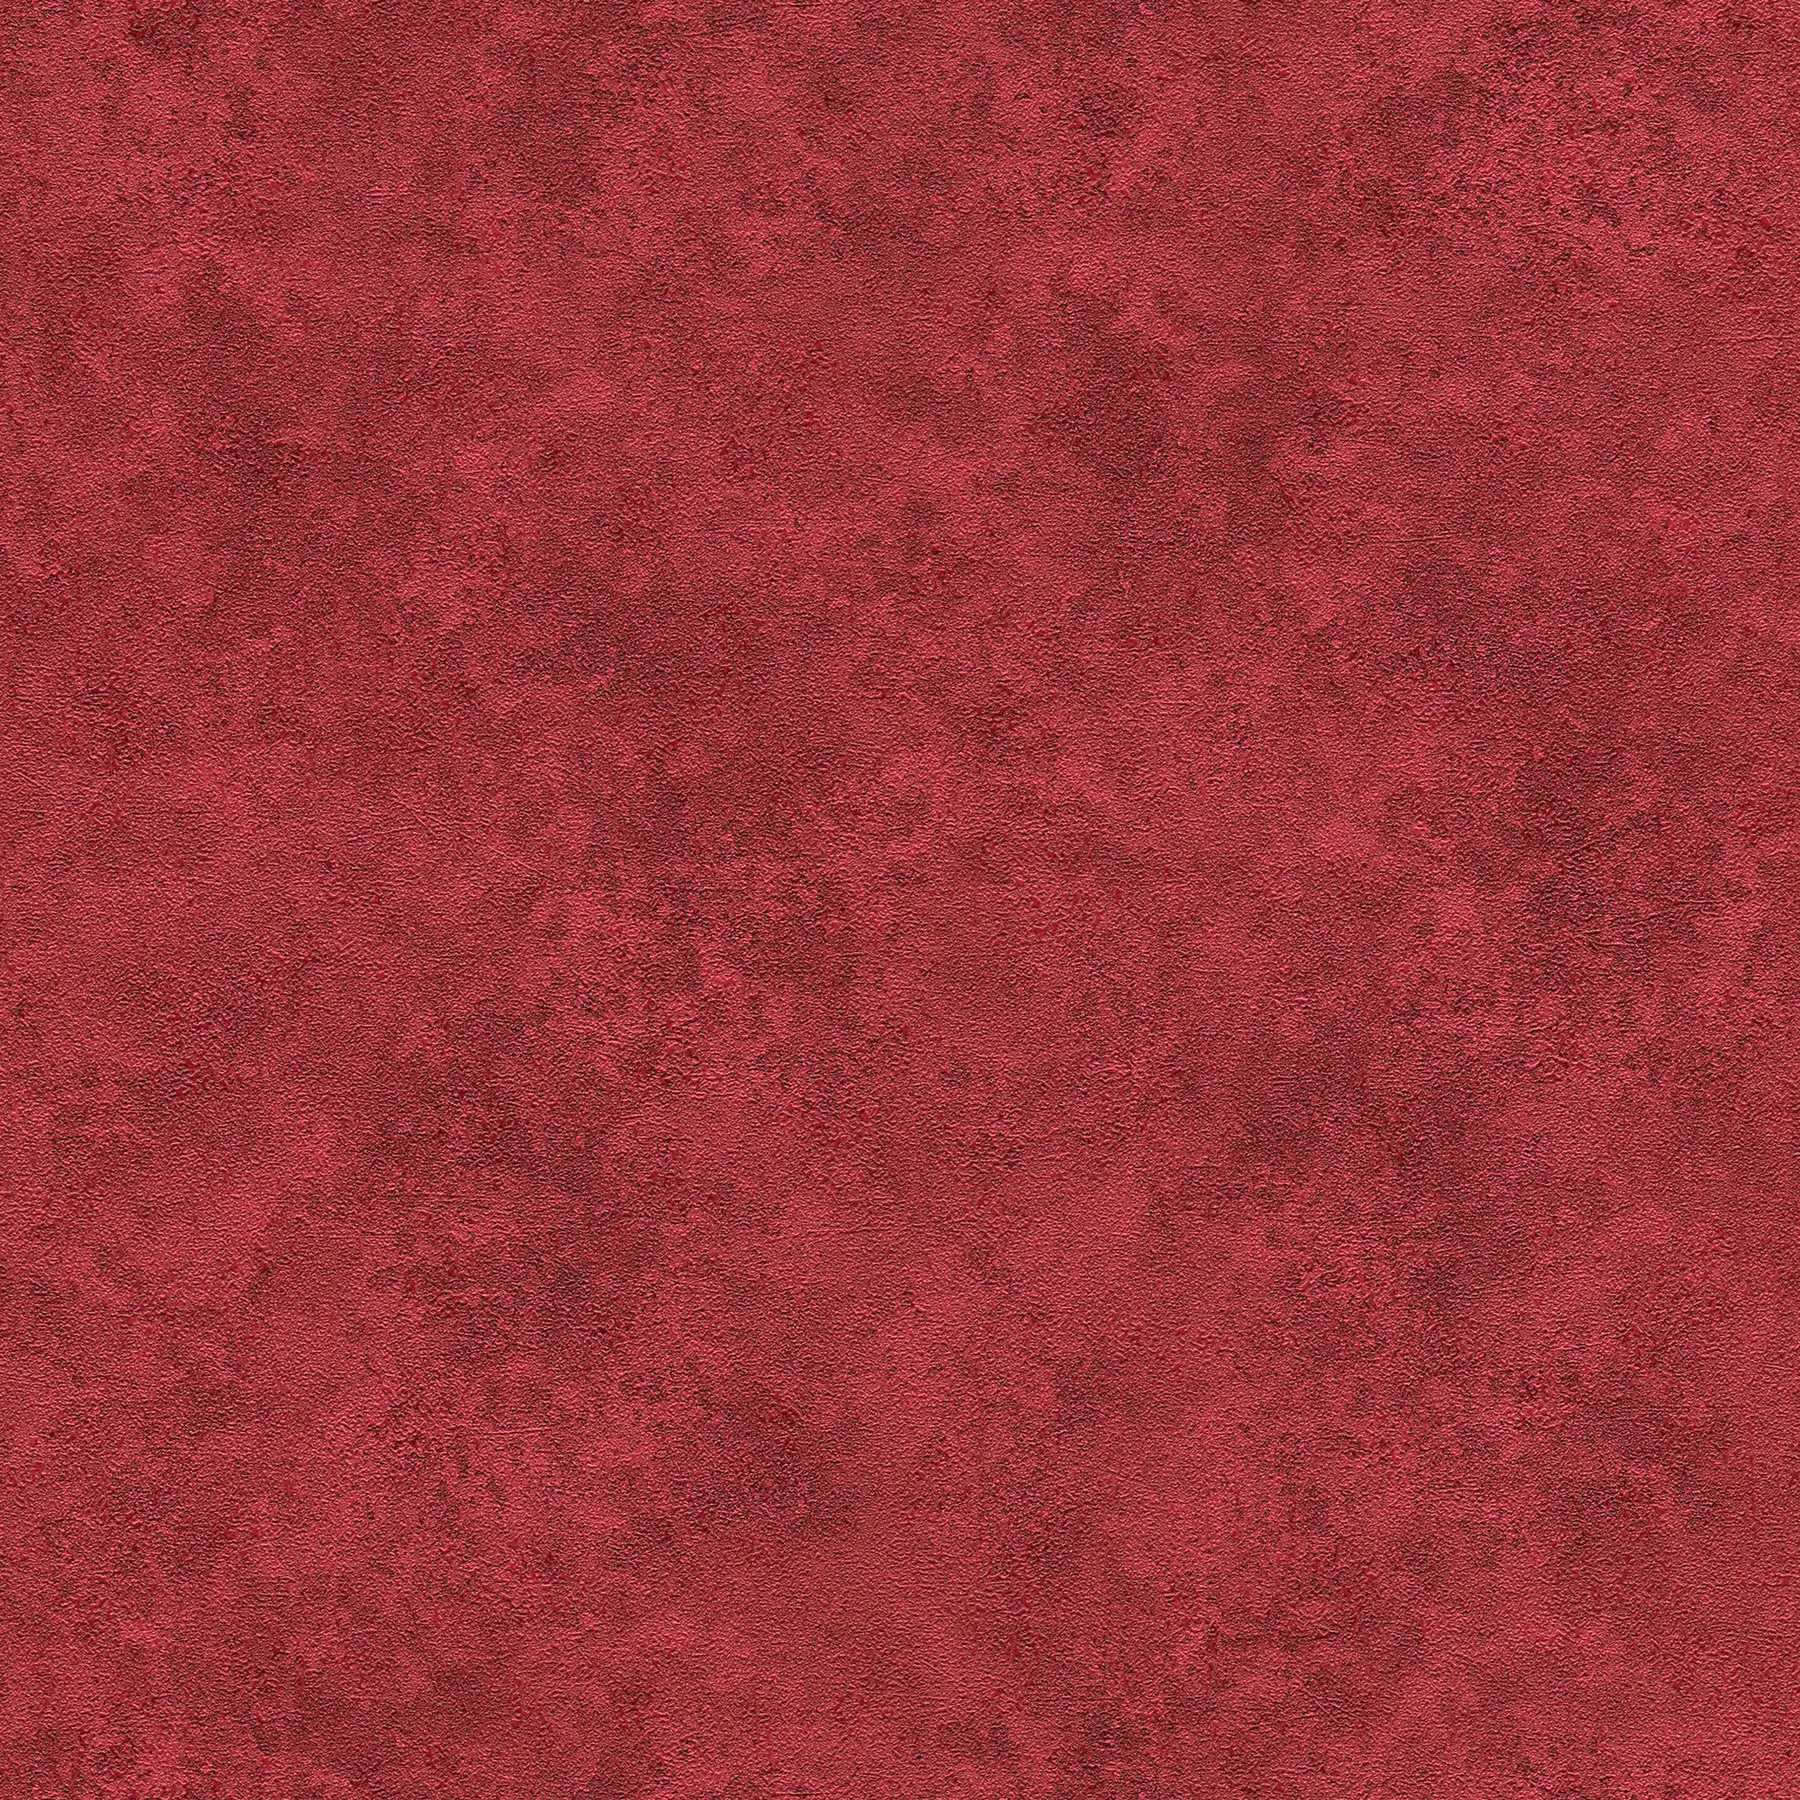 Eenheidsbehang gekleurd gearceerd, natuurlijk structuurpatroon - rood
